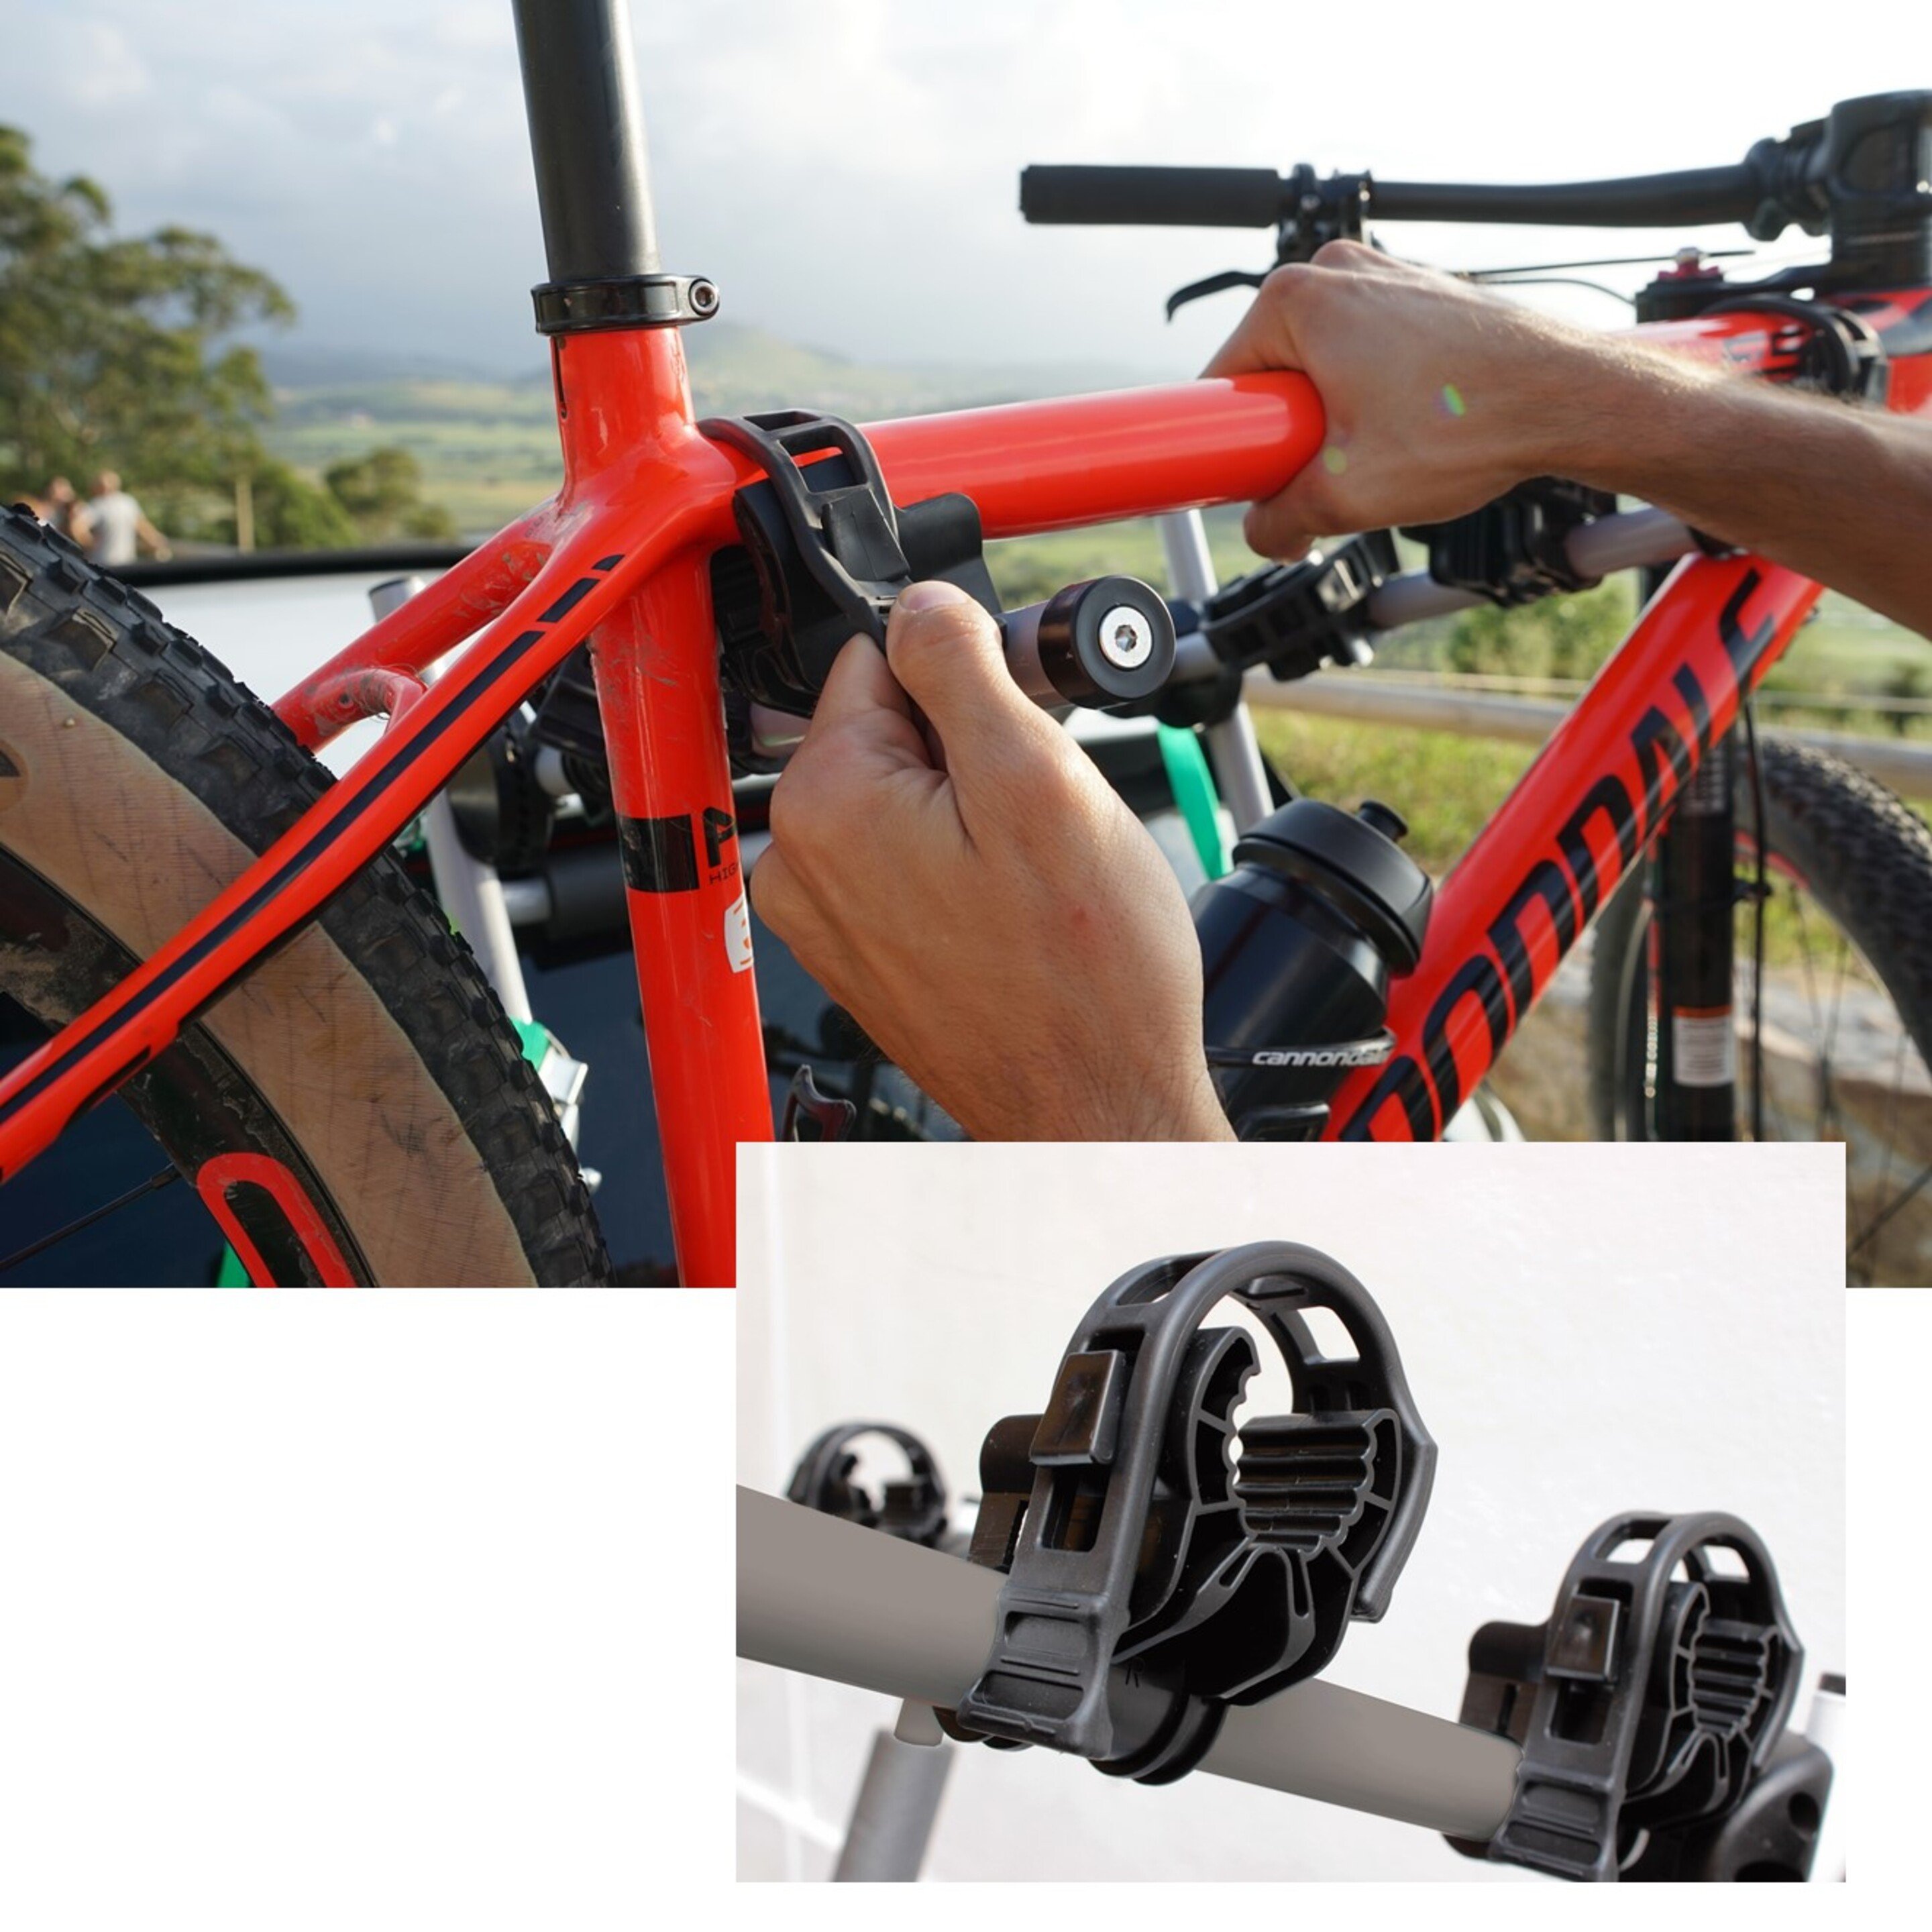 Gobiker® Portabicicletas Easy V3 Max De Portón Trasero Para 3 Bicicletas. Portabicis Plegable